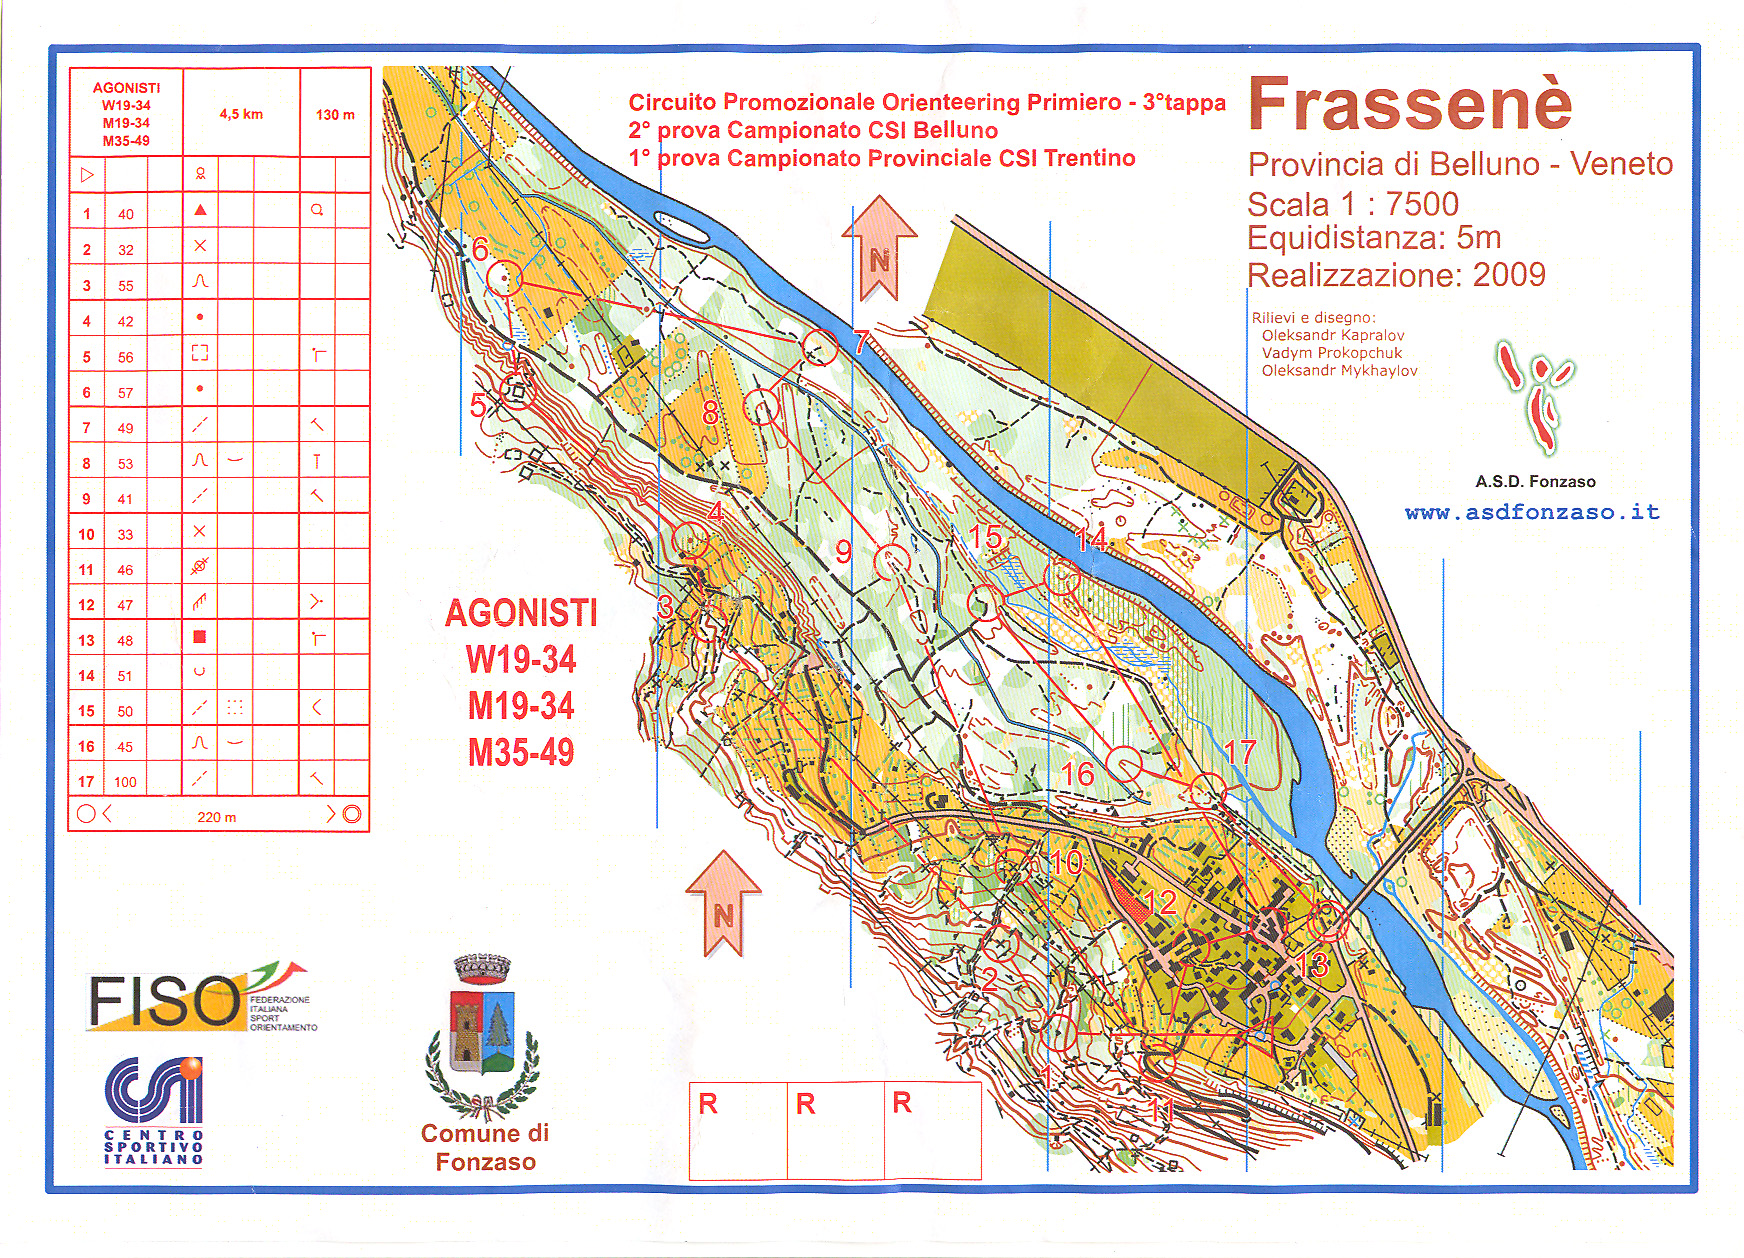 1^ prova Campionato Provinciale CSI Trentino 2015 (22/03/2015)